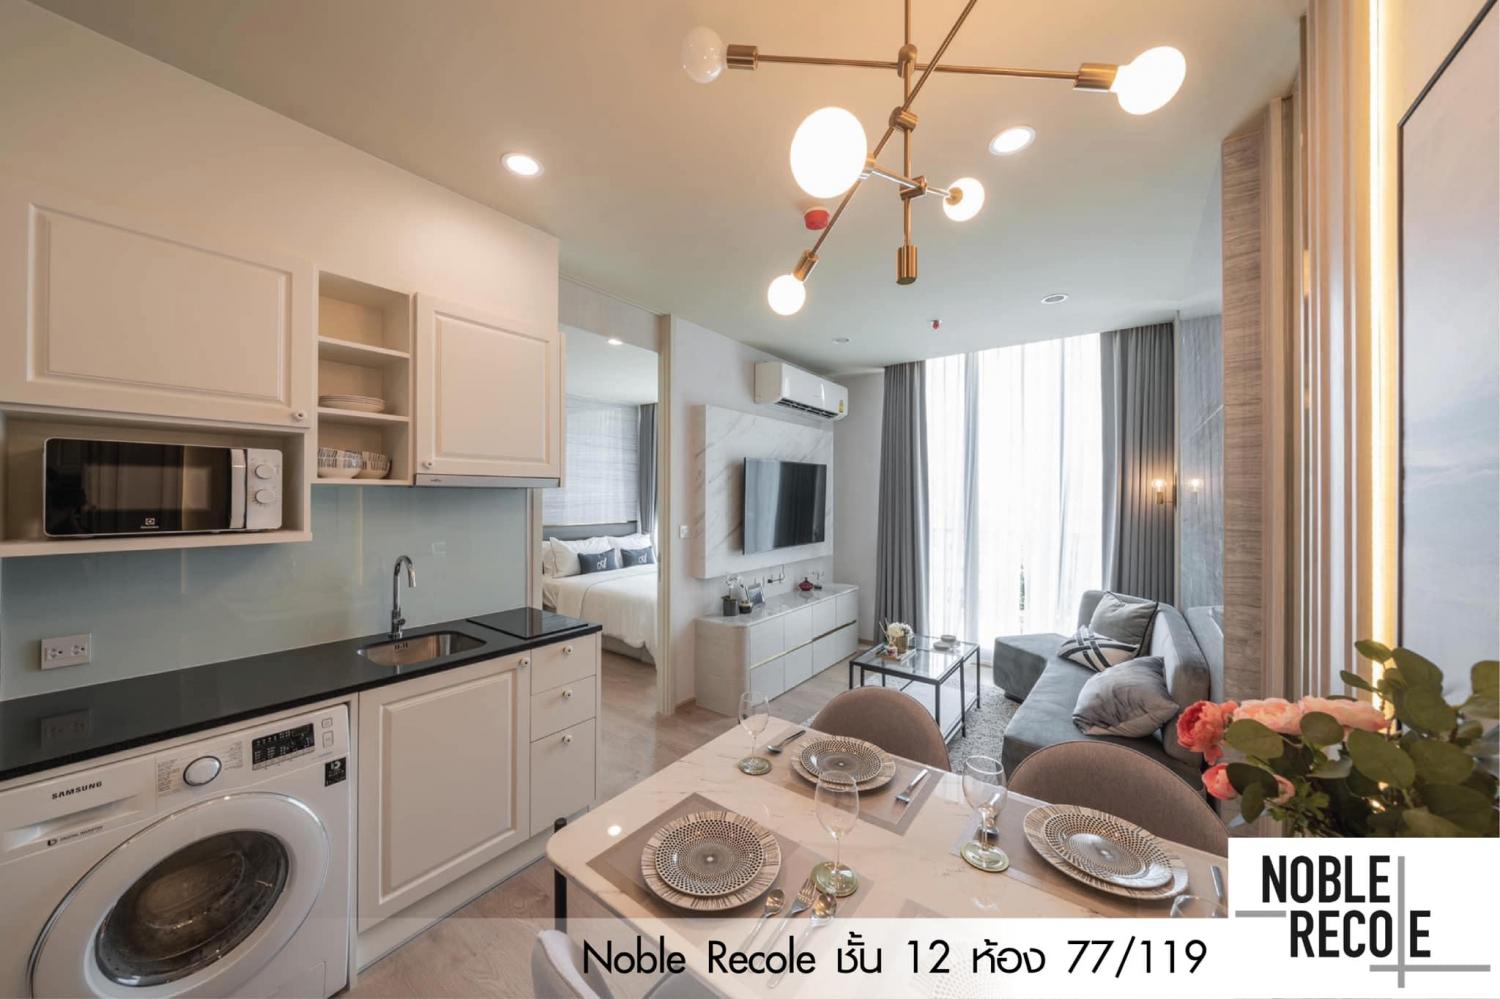 เช่าคอนโด โนเบิล รีโคล คอนโดมิเนียม - Condo Rental Noble Recole condominium - 2240125